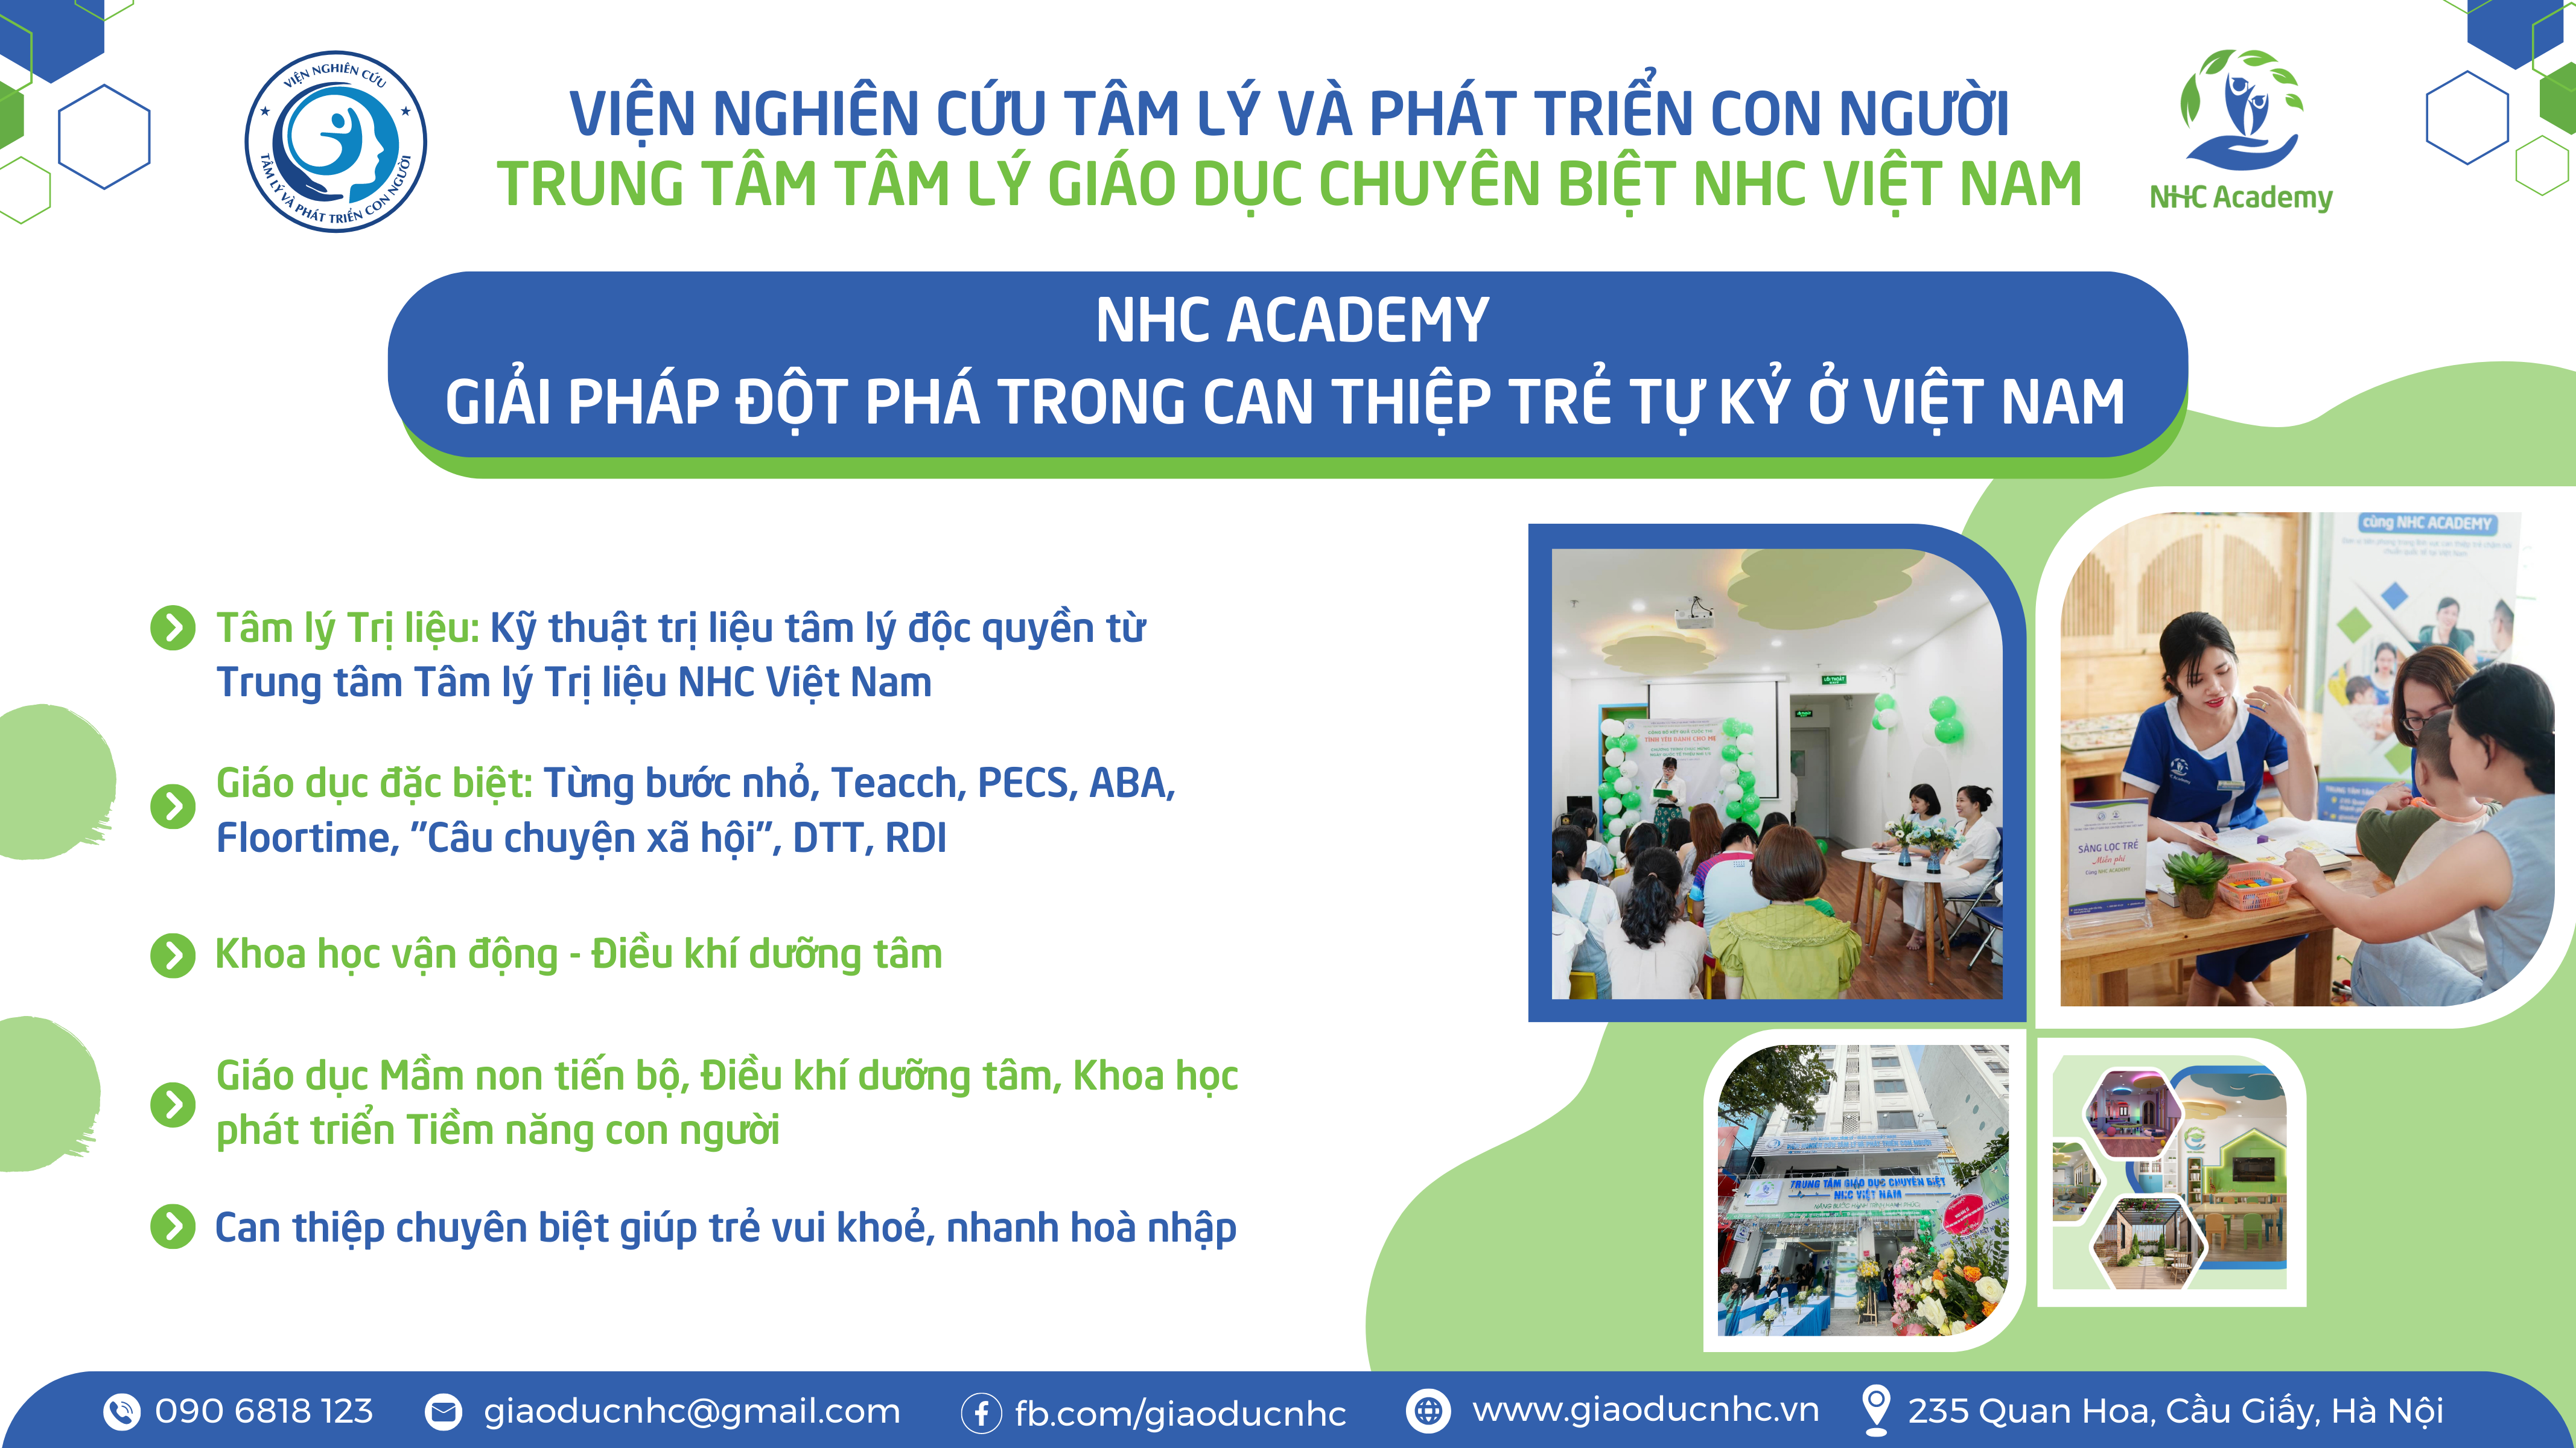 NHC Academy - Giải pháp đột phá trong can thiệp trẻ tự kỷ ở Việt Nam 